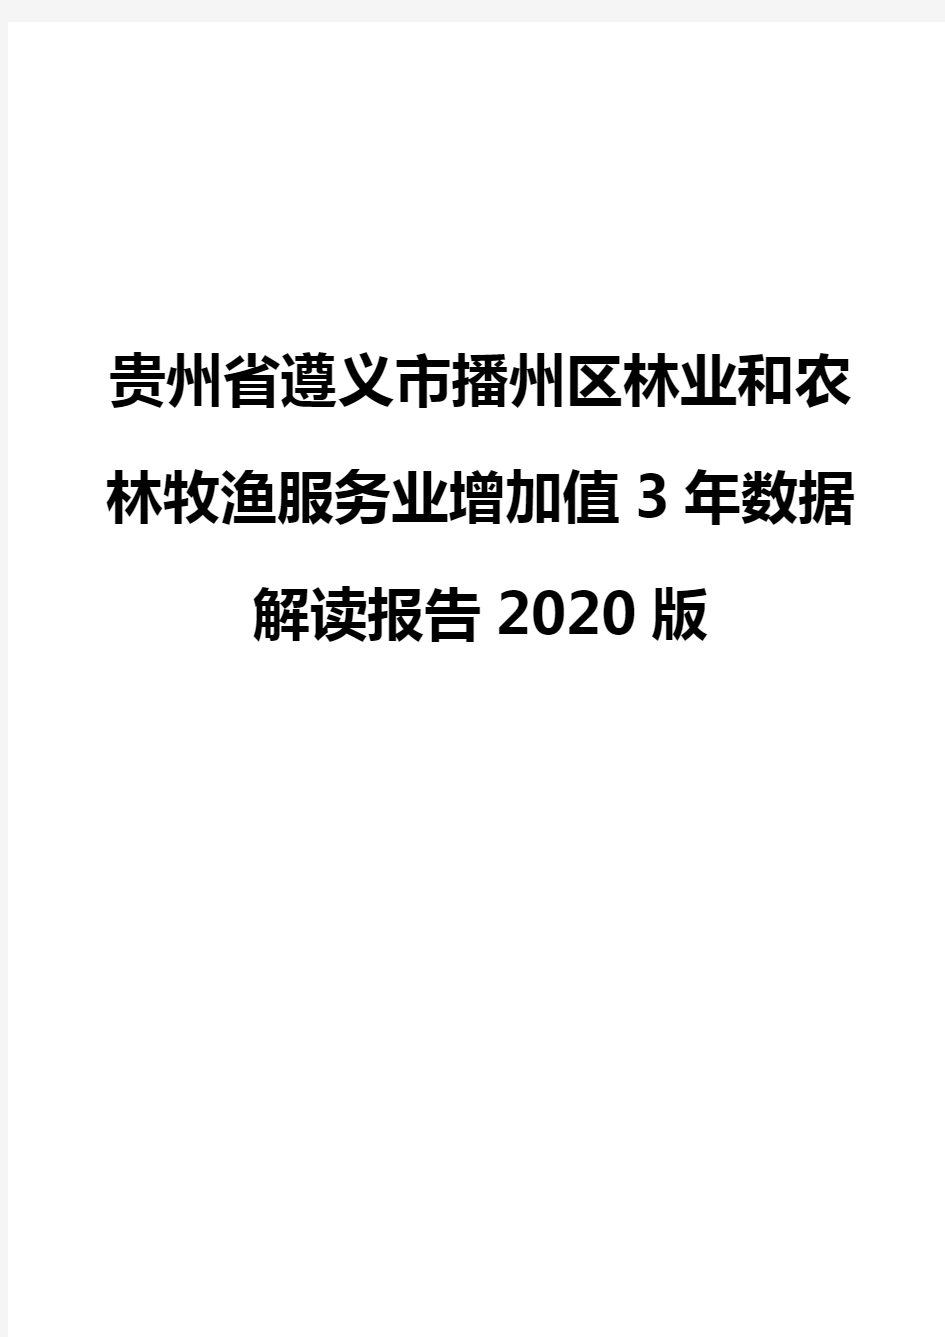 贵州省遵义市播州区林业和农林牧渔服务业增加值3年数据解读报告2020版